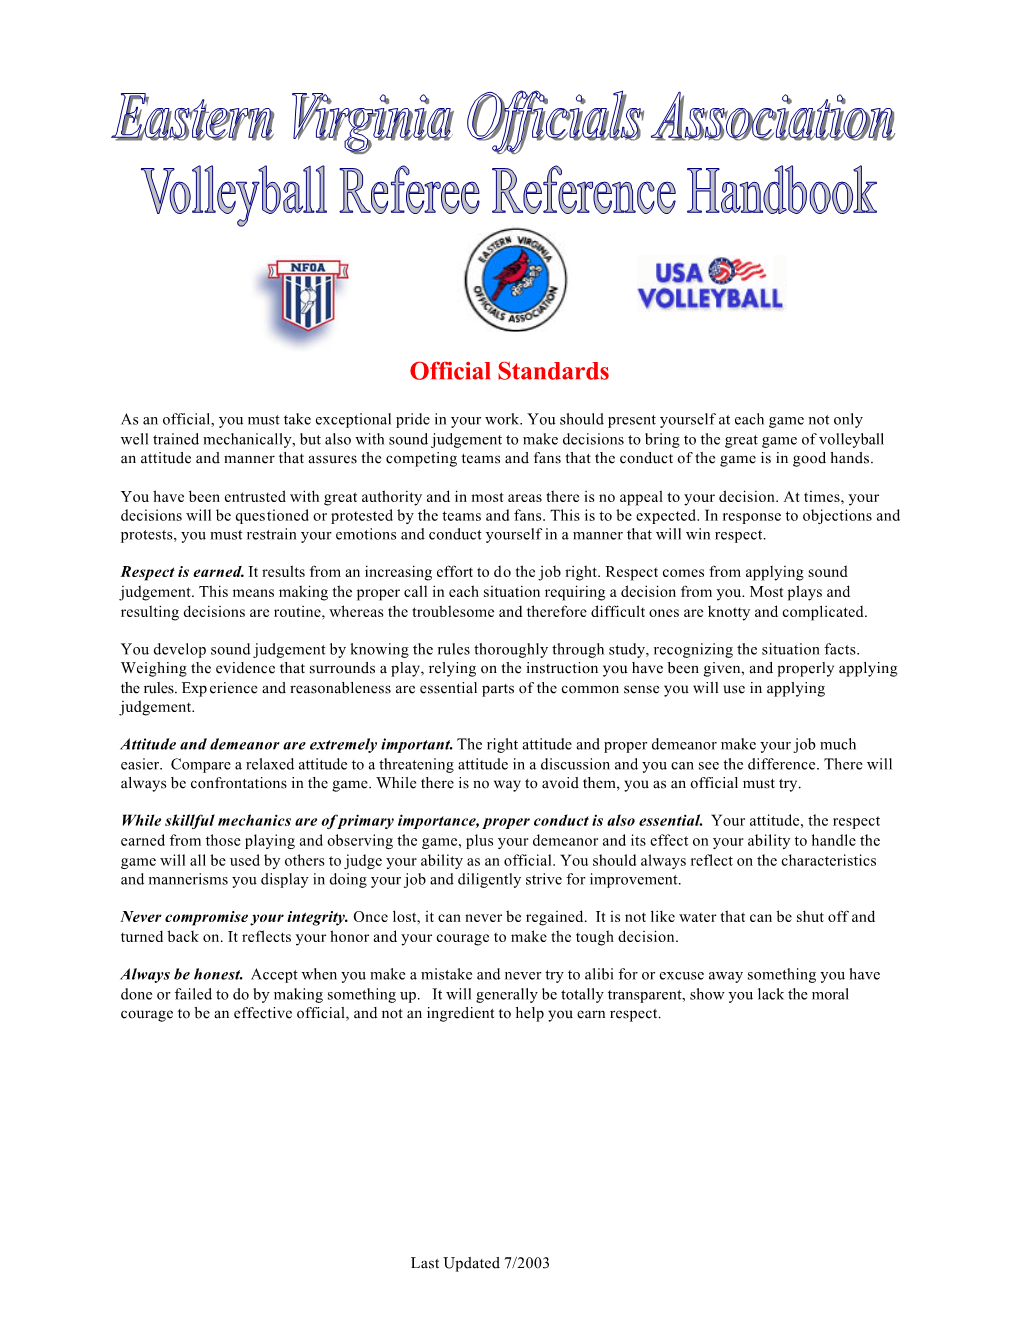 EVOA Volleyball Referee Handbook